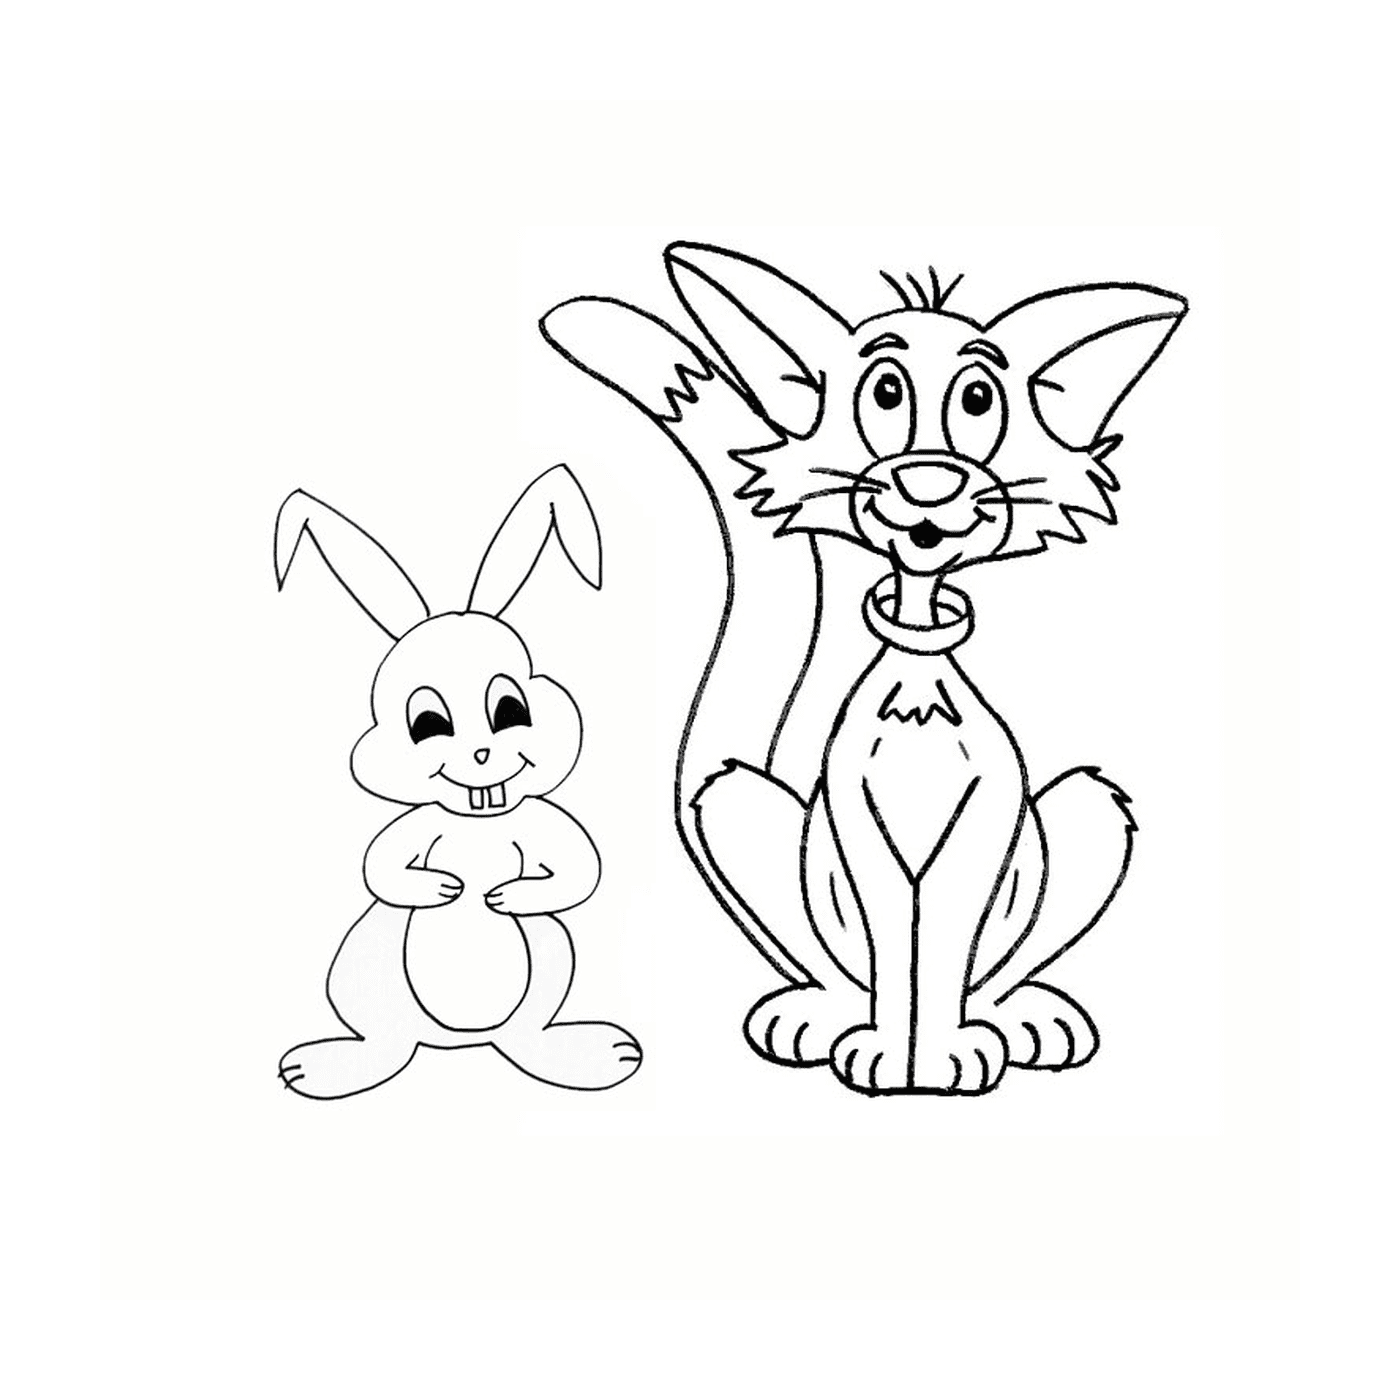  Un gatto e un coniglio disegnati insieme 